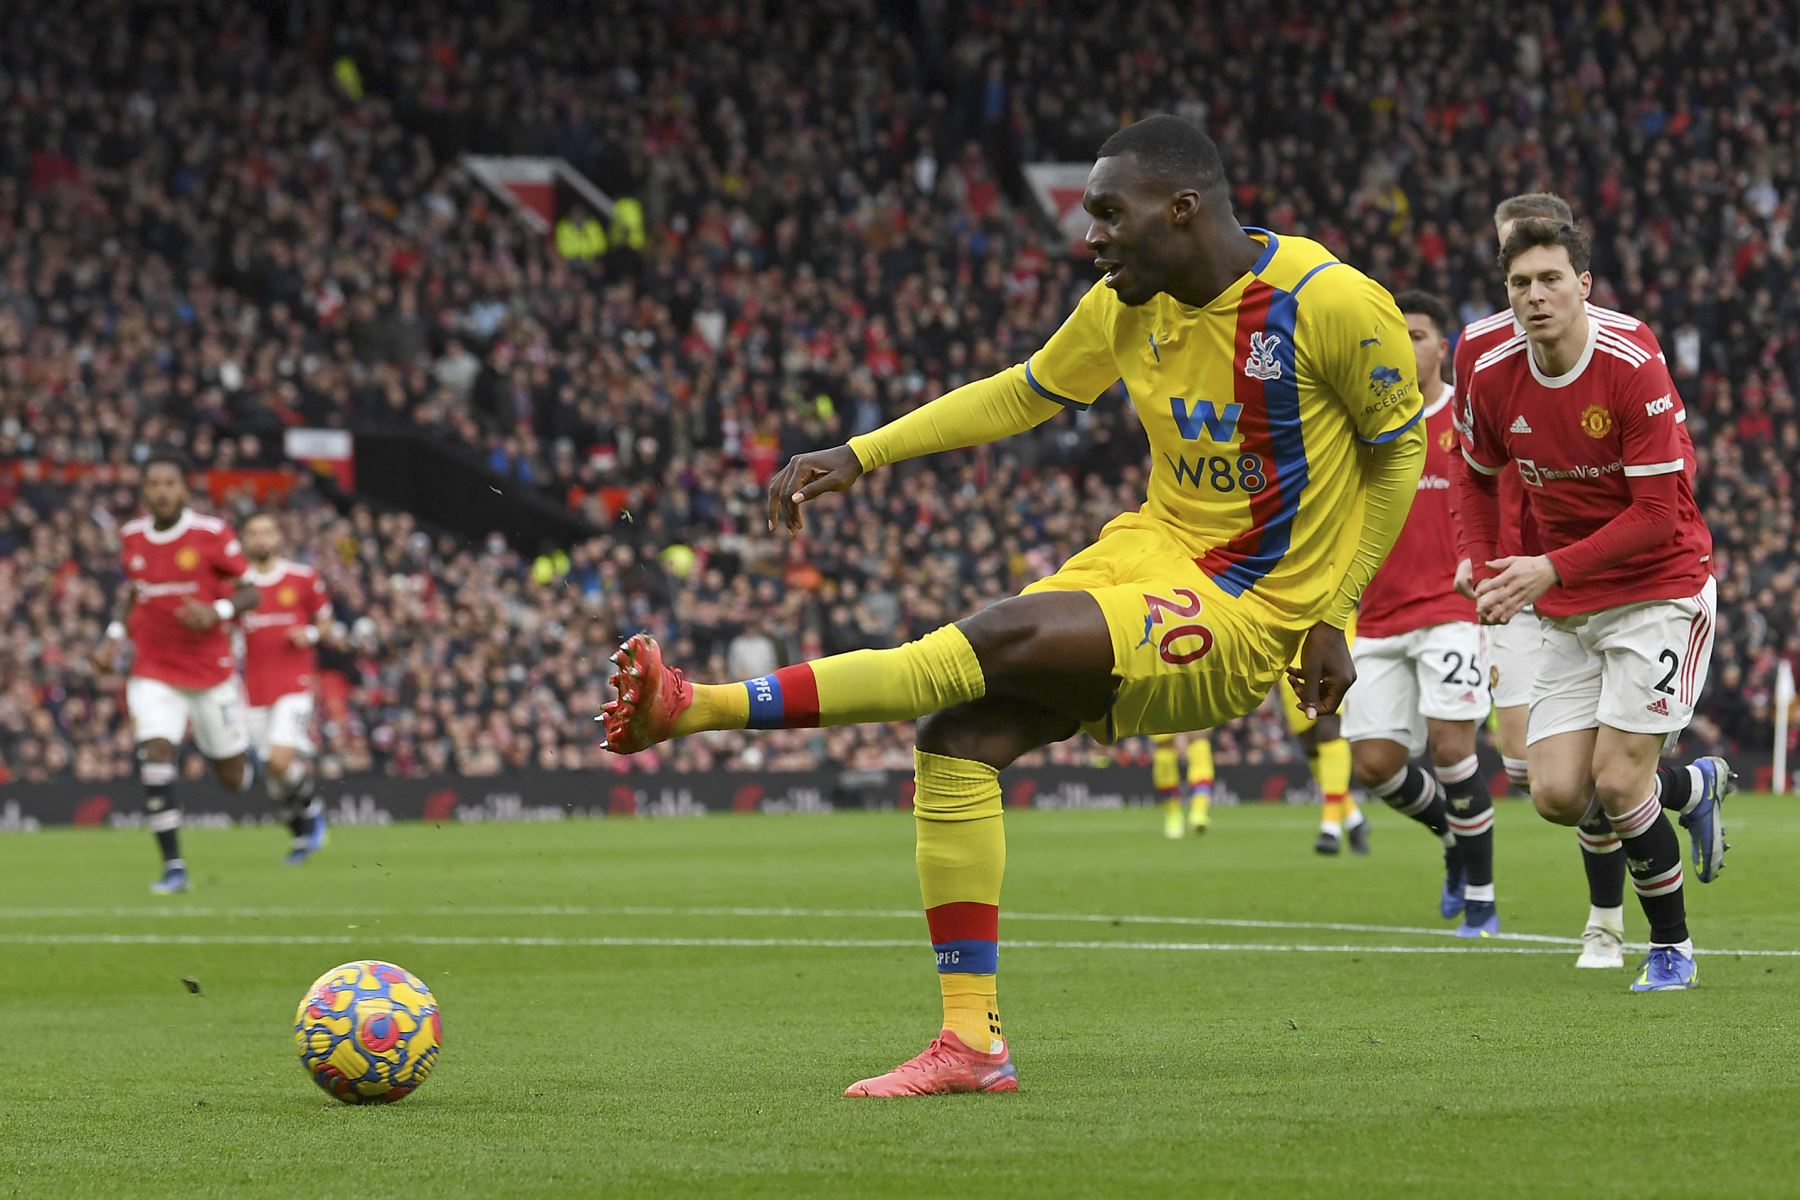 El delantero belga de Crystal Palace, Christian Benteke, dispara pero no logra anotar durante el partido de la Premier League. Foto: AFP